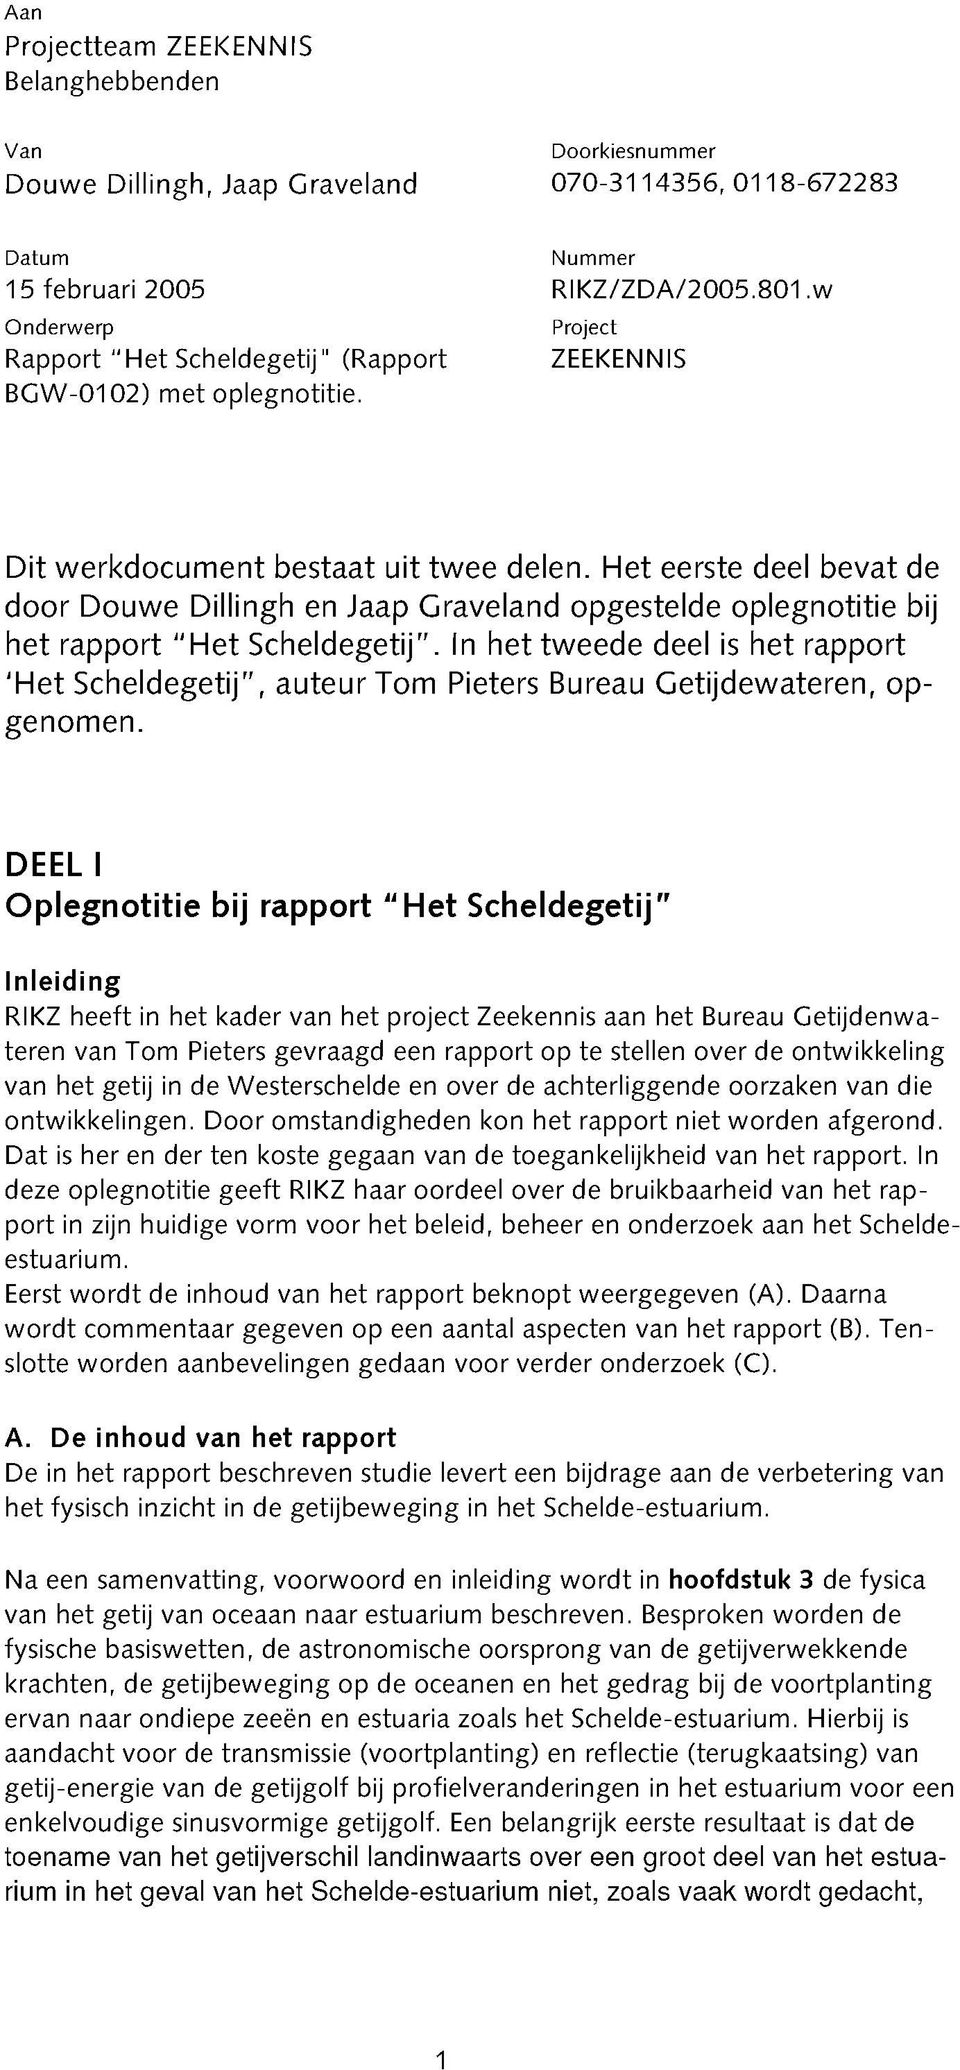 Het eerste deel bevat de door Douwe Dillingh en Jaap Graveland opgestelde oplegnotitie bij het rapport "H et Scheldegetij".